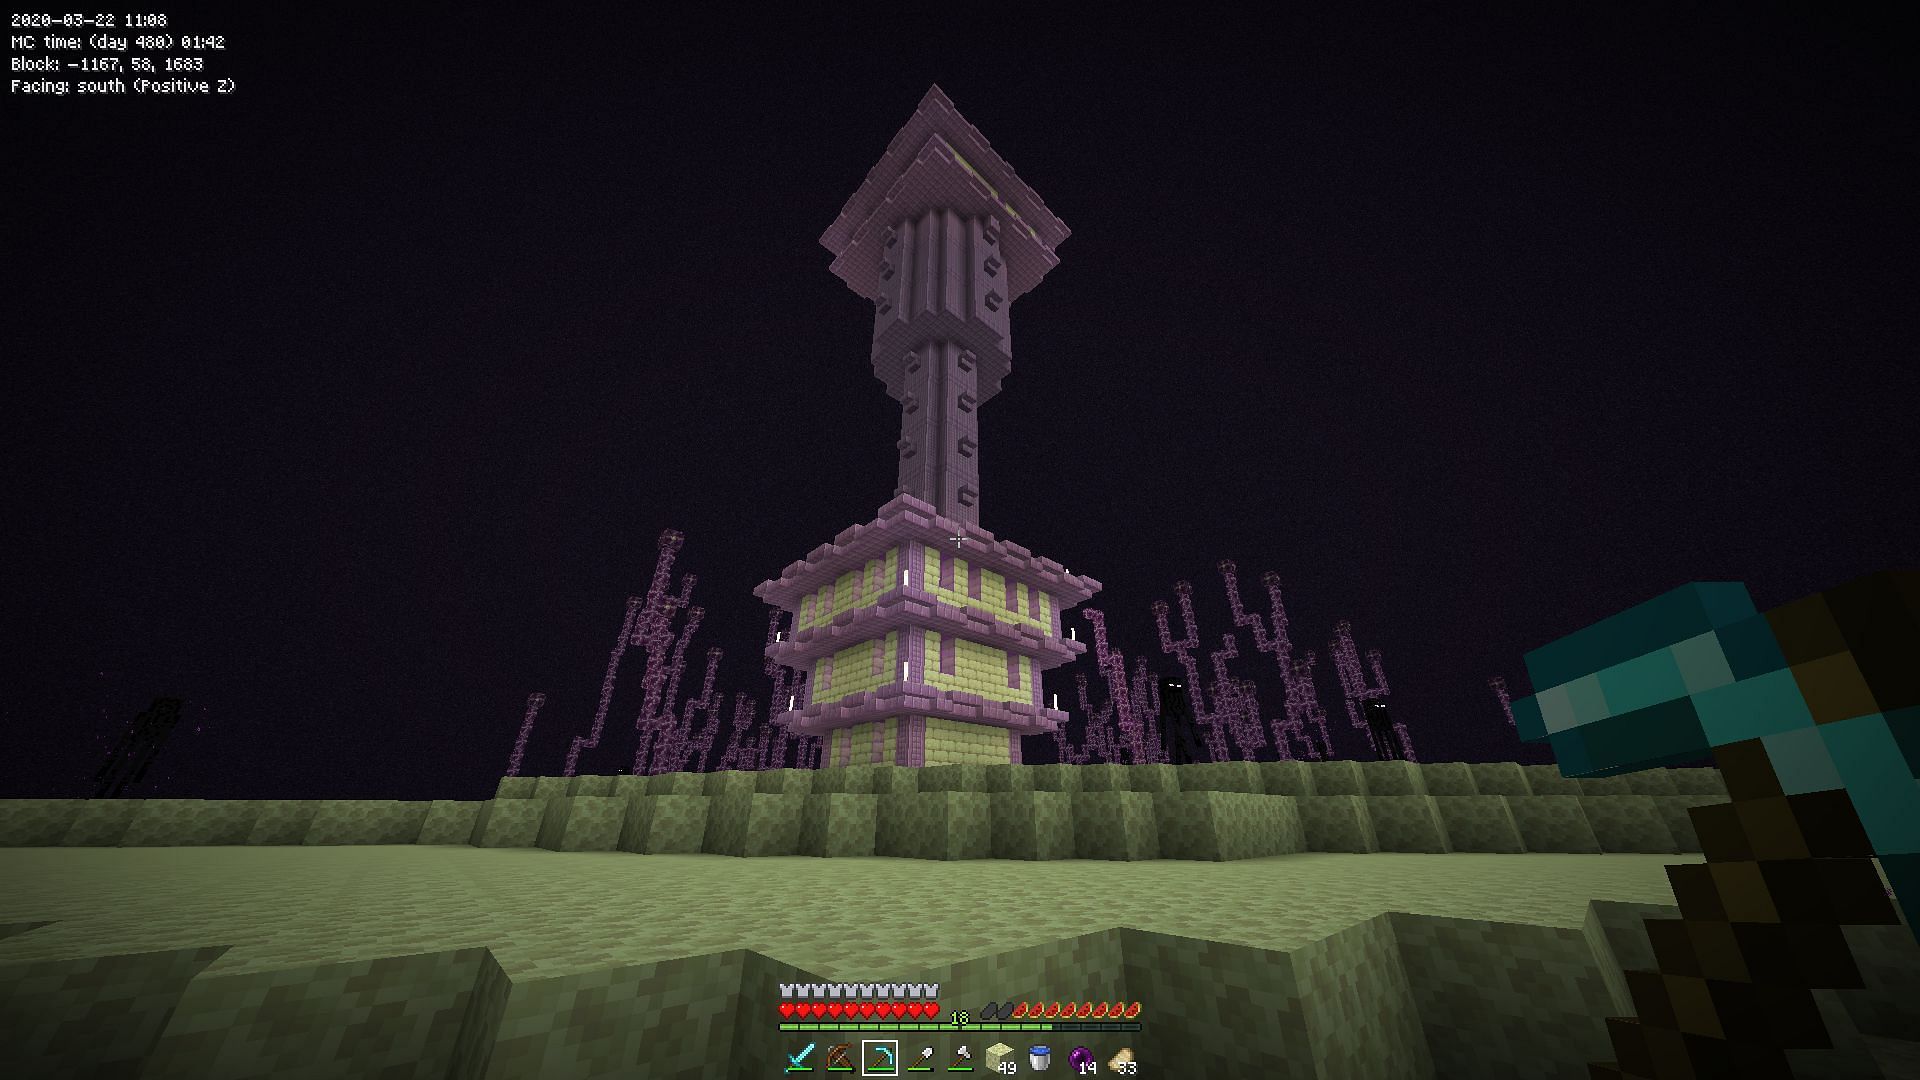 An End City in Minecraft (Image via u/N1cknamed on Reddit)